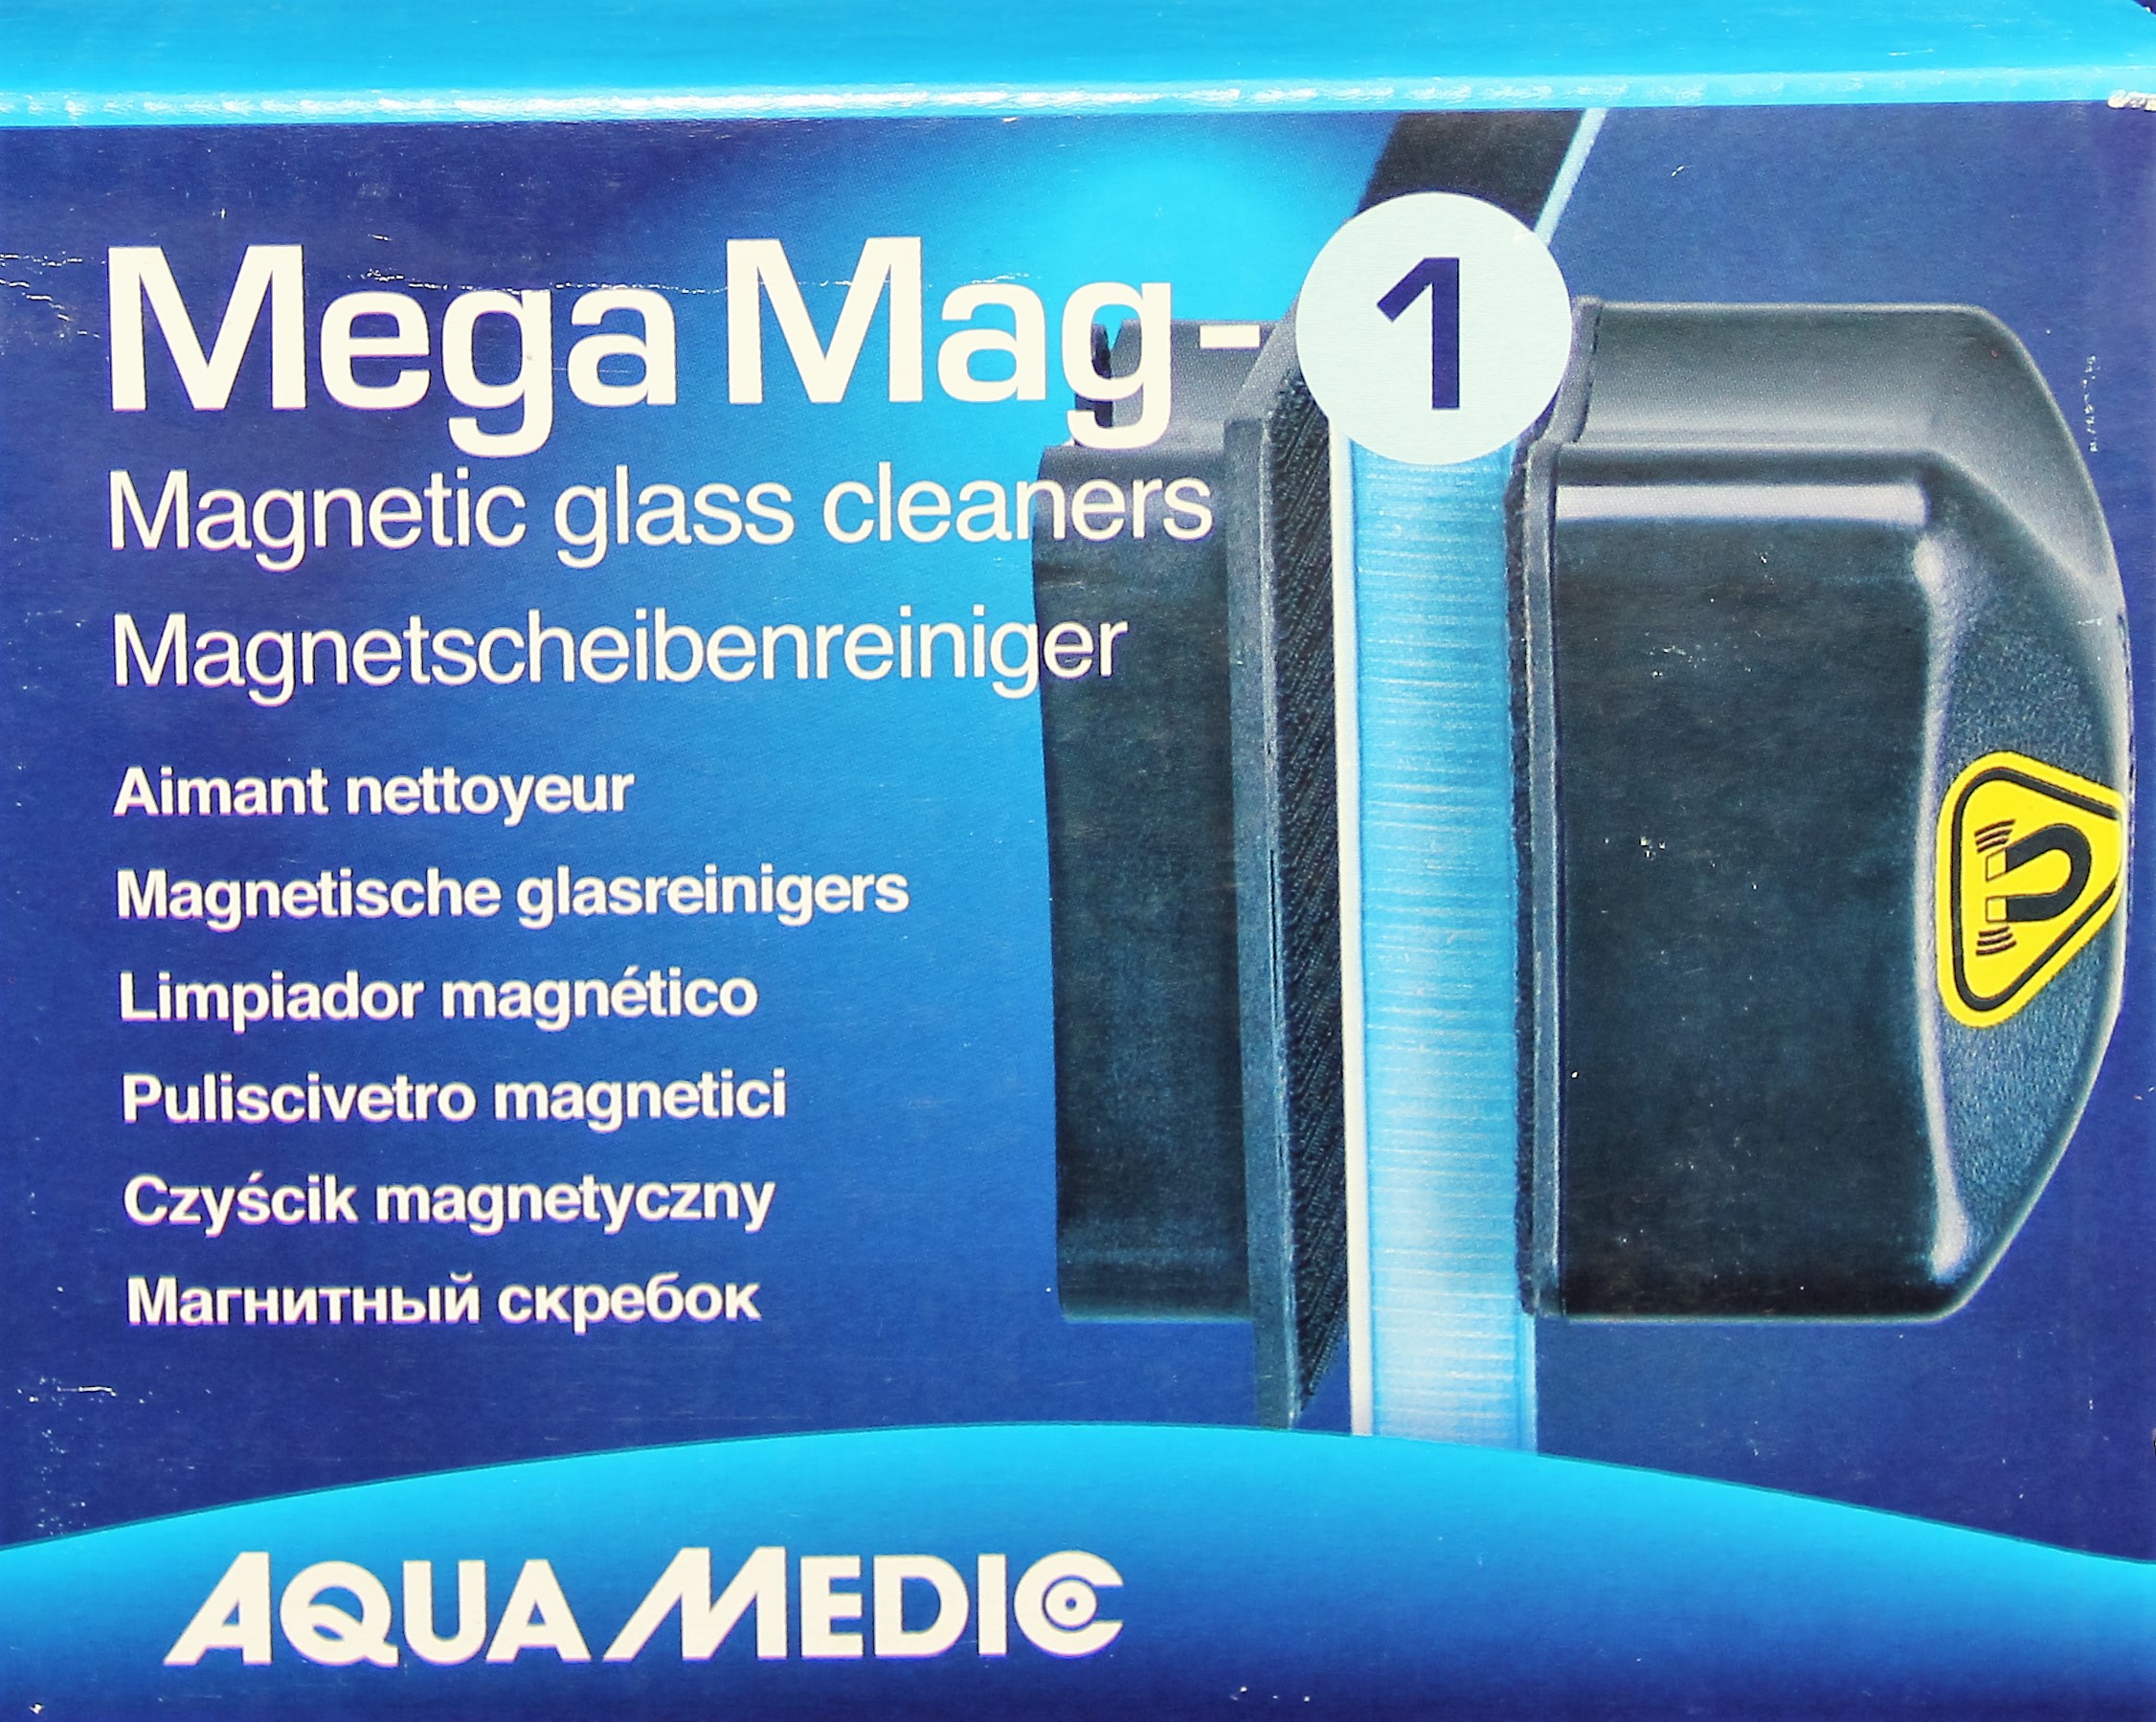 Aqua Medic Mega Mag 1